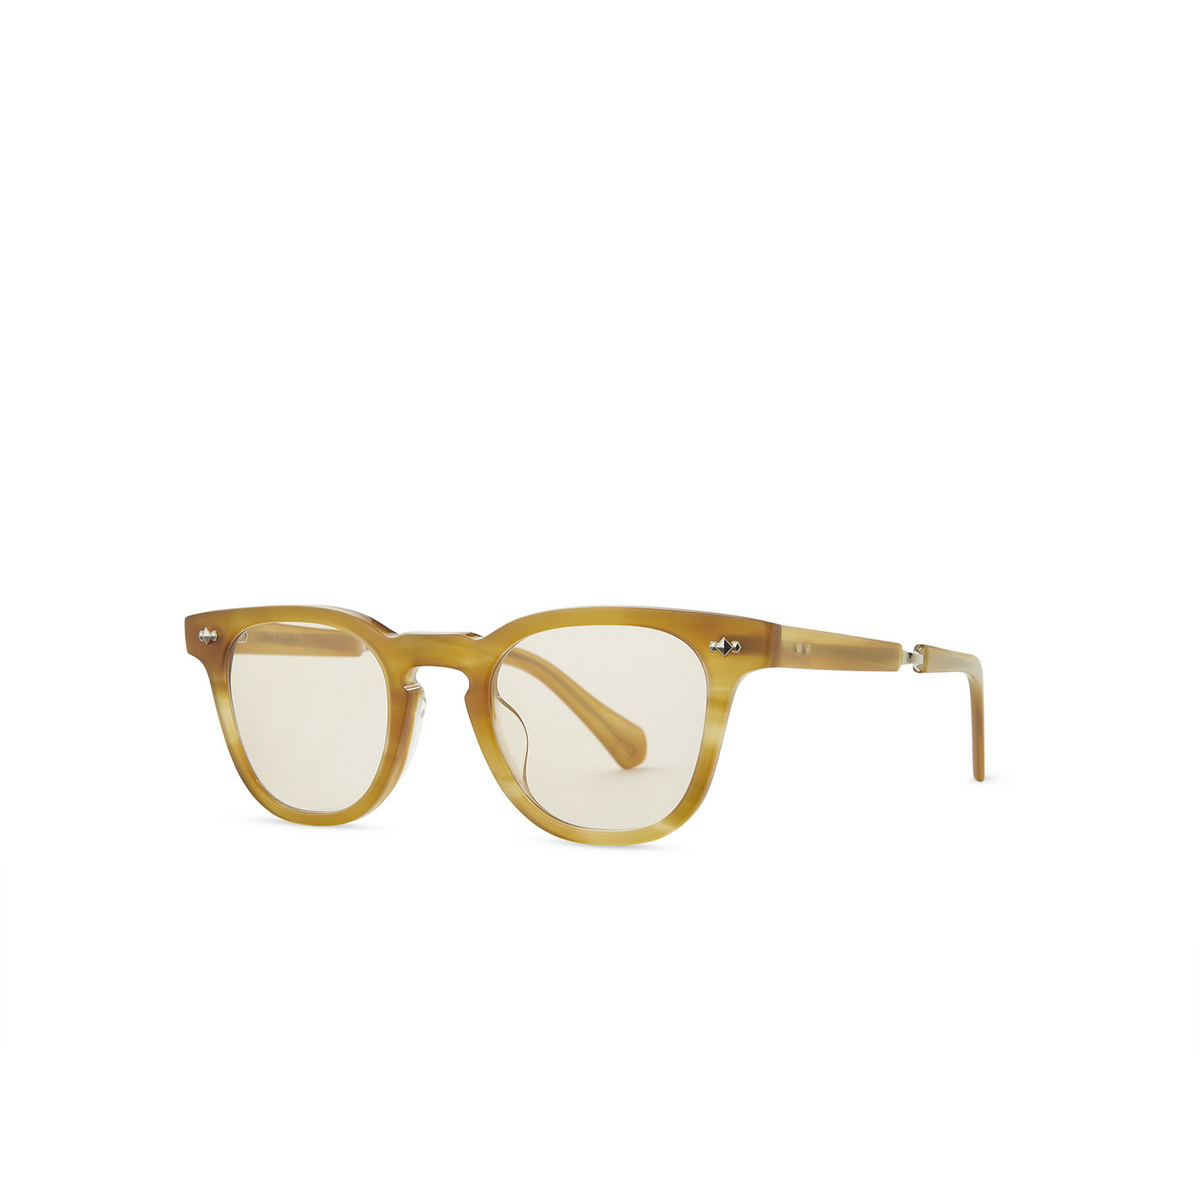 Mr. Leight DEAN C Eyeglasses HNYTRT-12KG-DEM BGE Honey Tortoise-12K White Gold-Demo Beige - three-quarters view